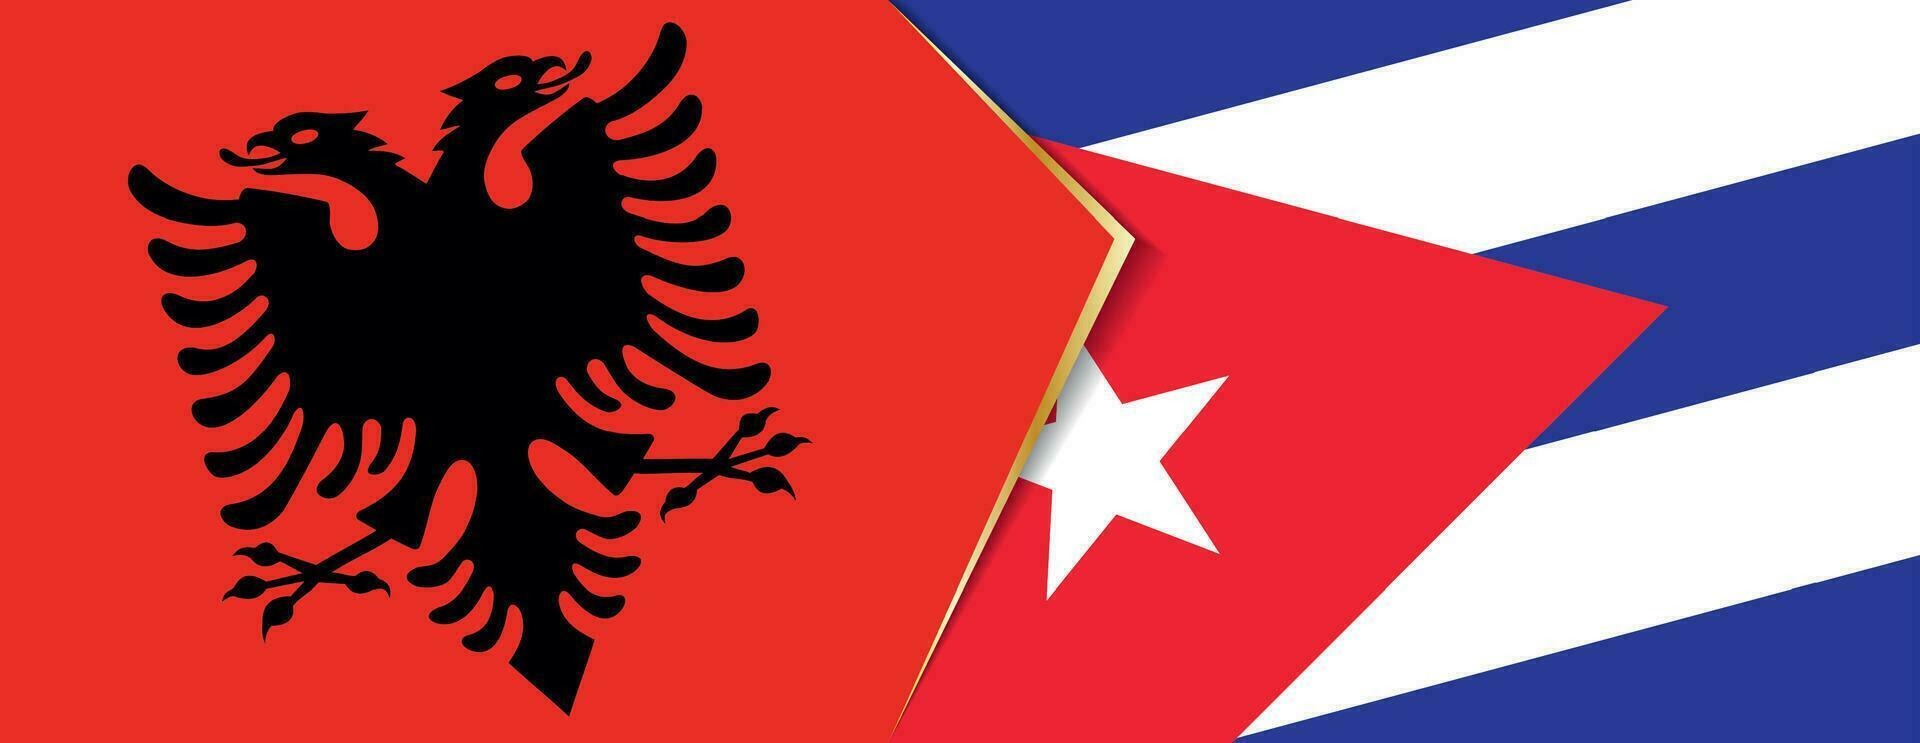 Albanië en Cuba vlaggen, twee vector vlaggen.